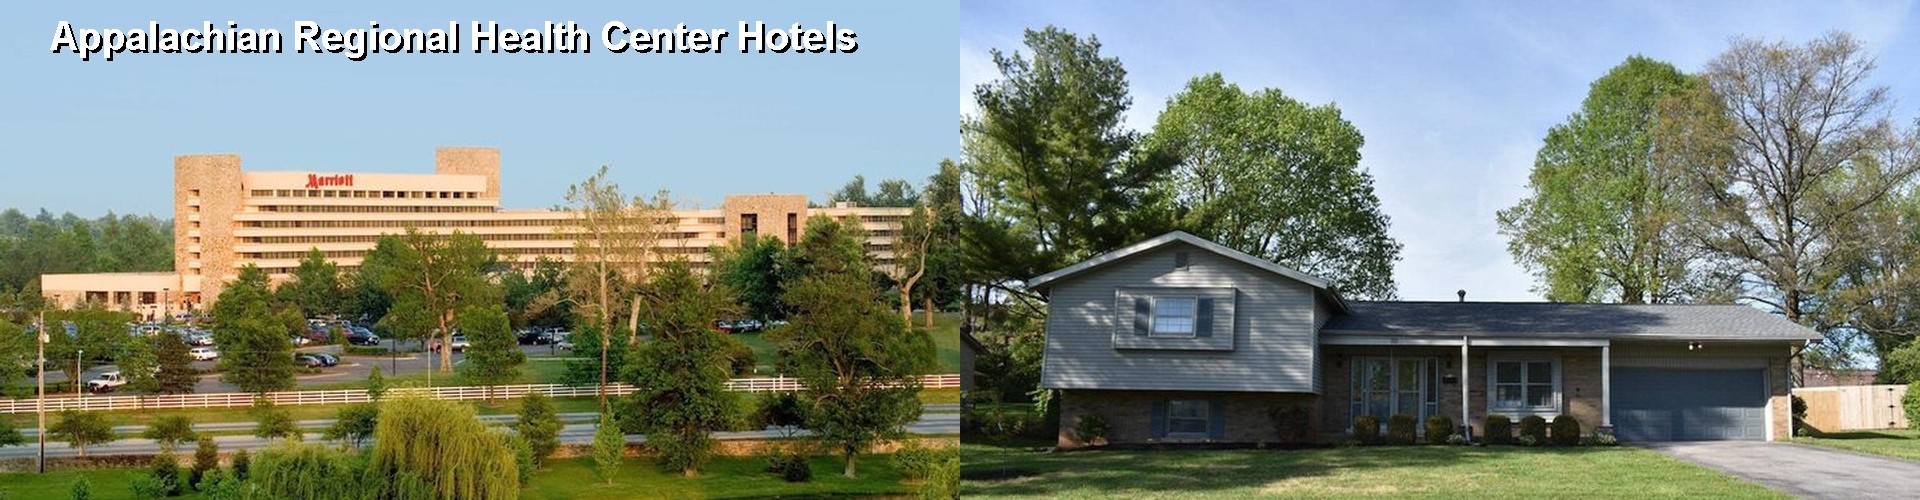 5 Best Hotels near Appalachian Regional Health Center